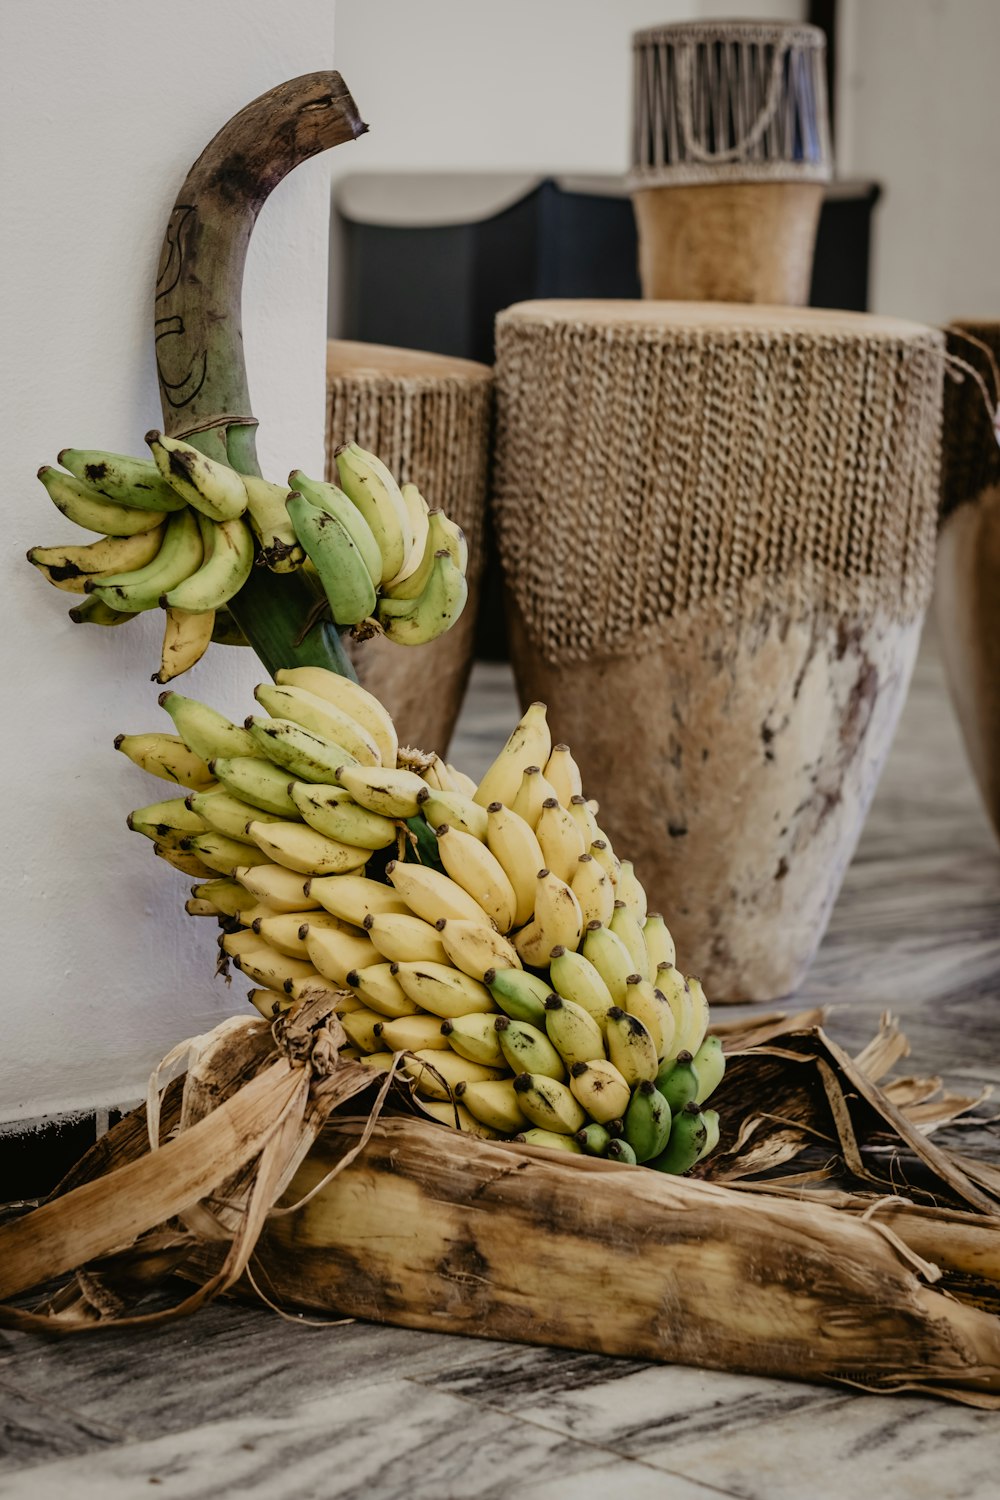 grüne Bananenfrucht auf braun geflochtenem Korb